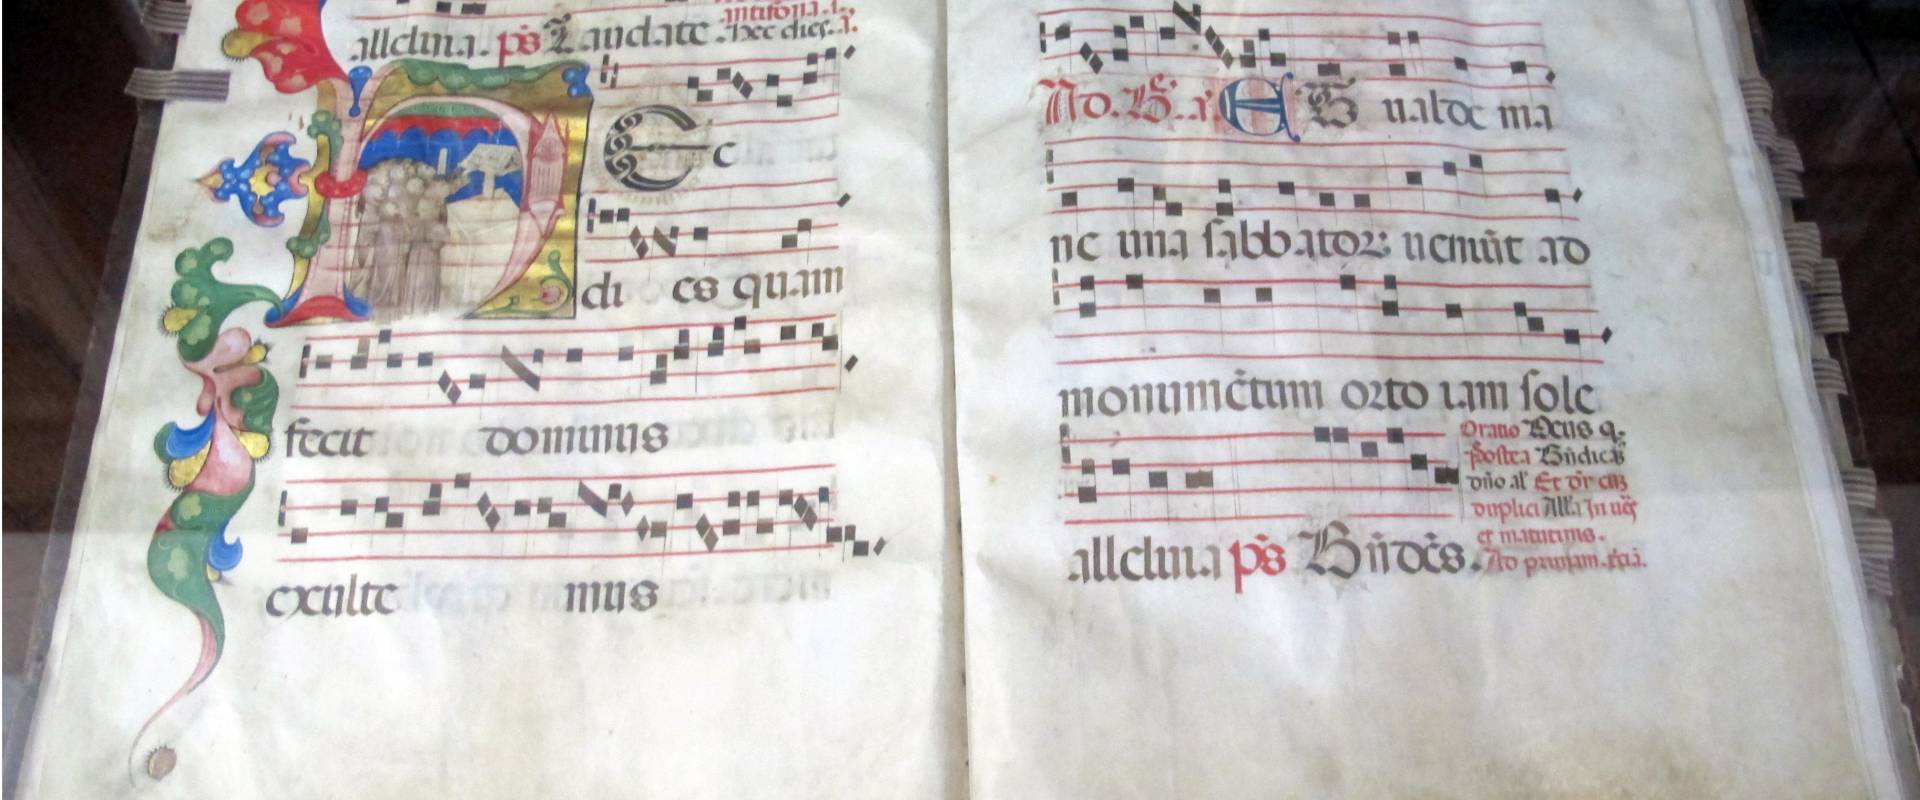 Antifonario da pasqua al corpus domini, 1450s, cod. bessarione 3, 01 photo by Sailko